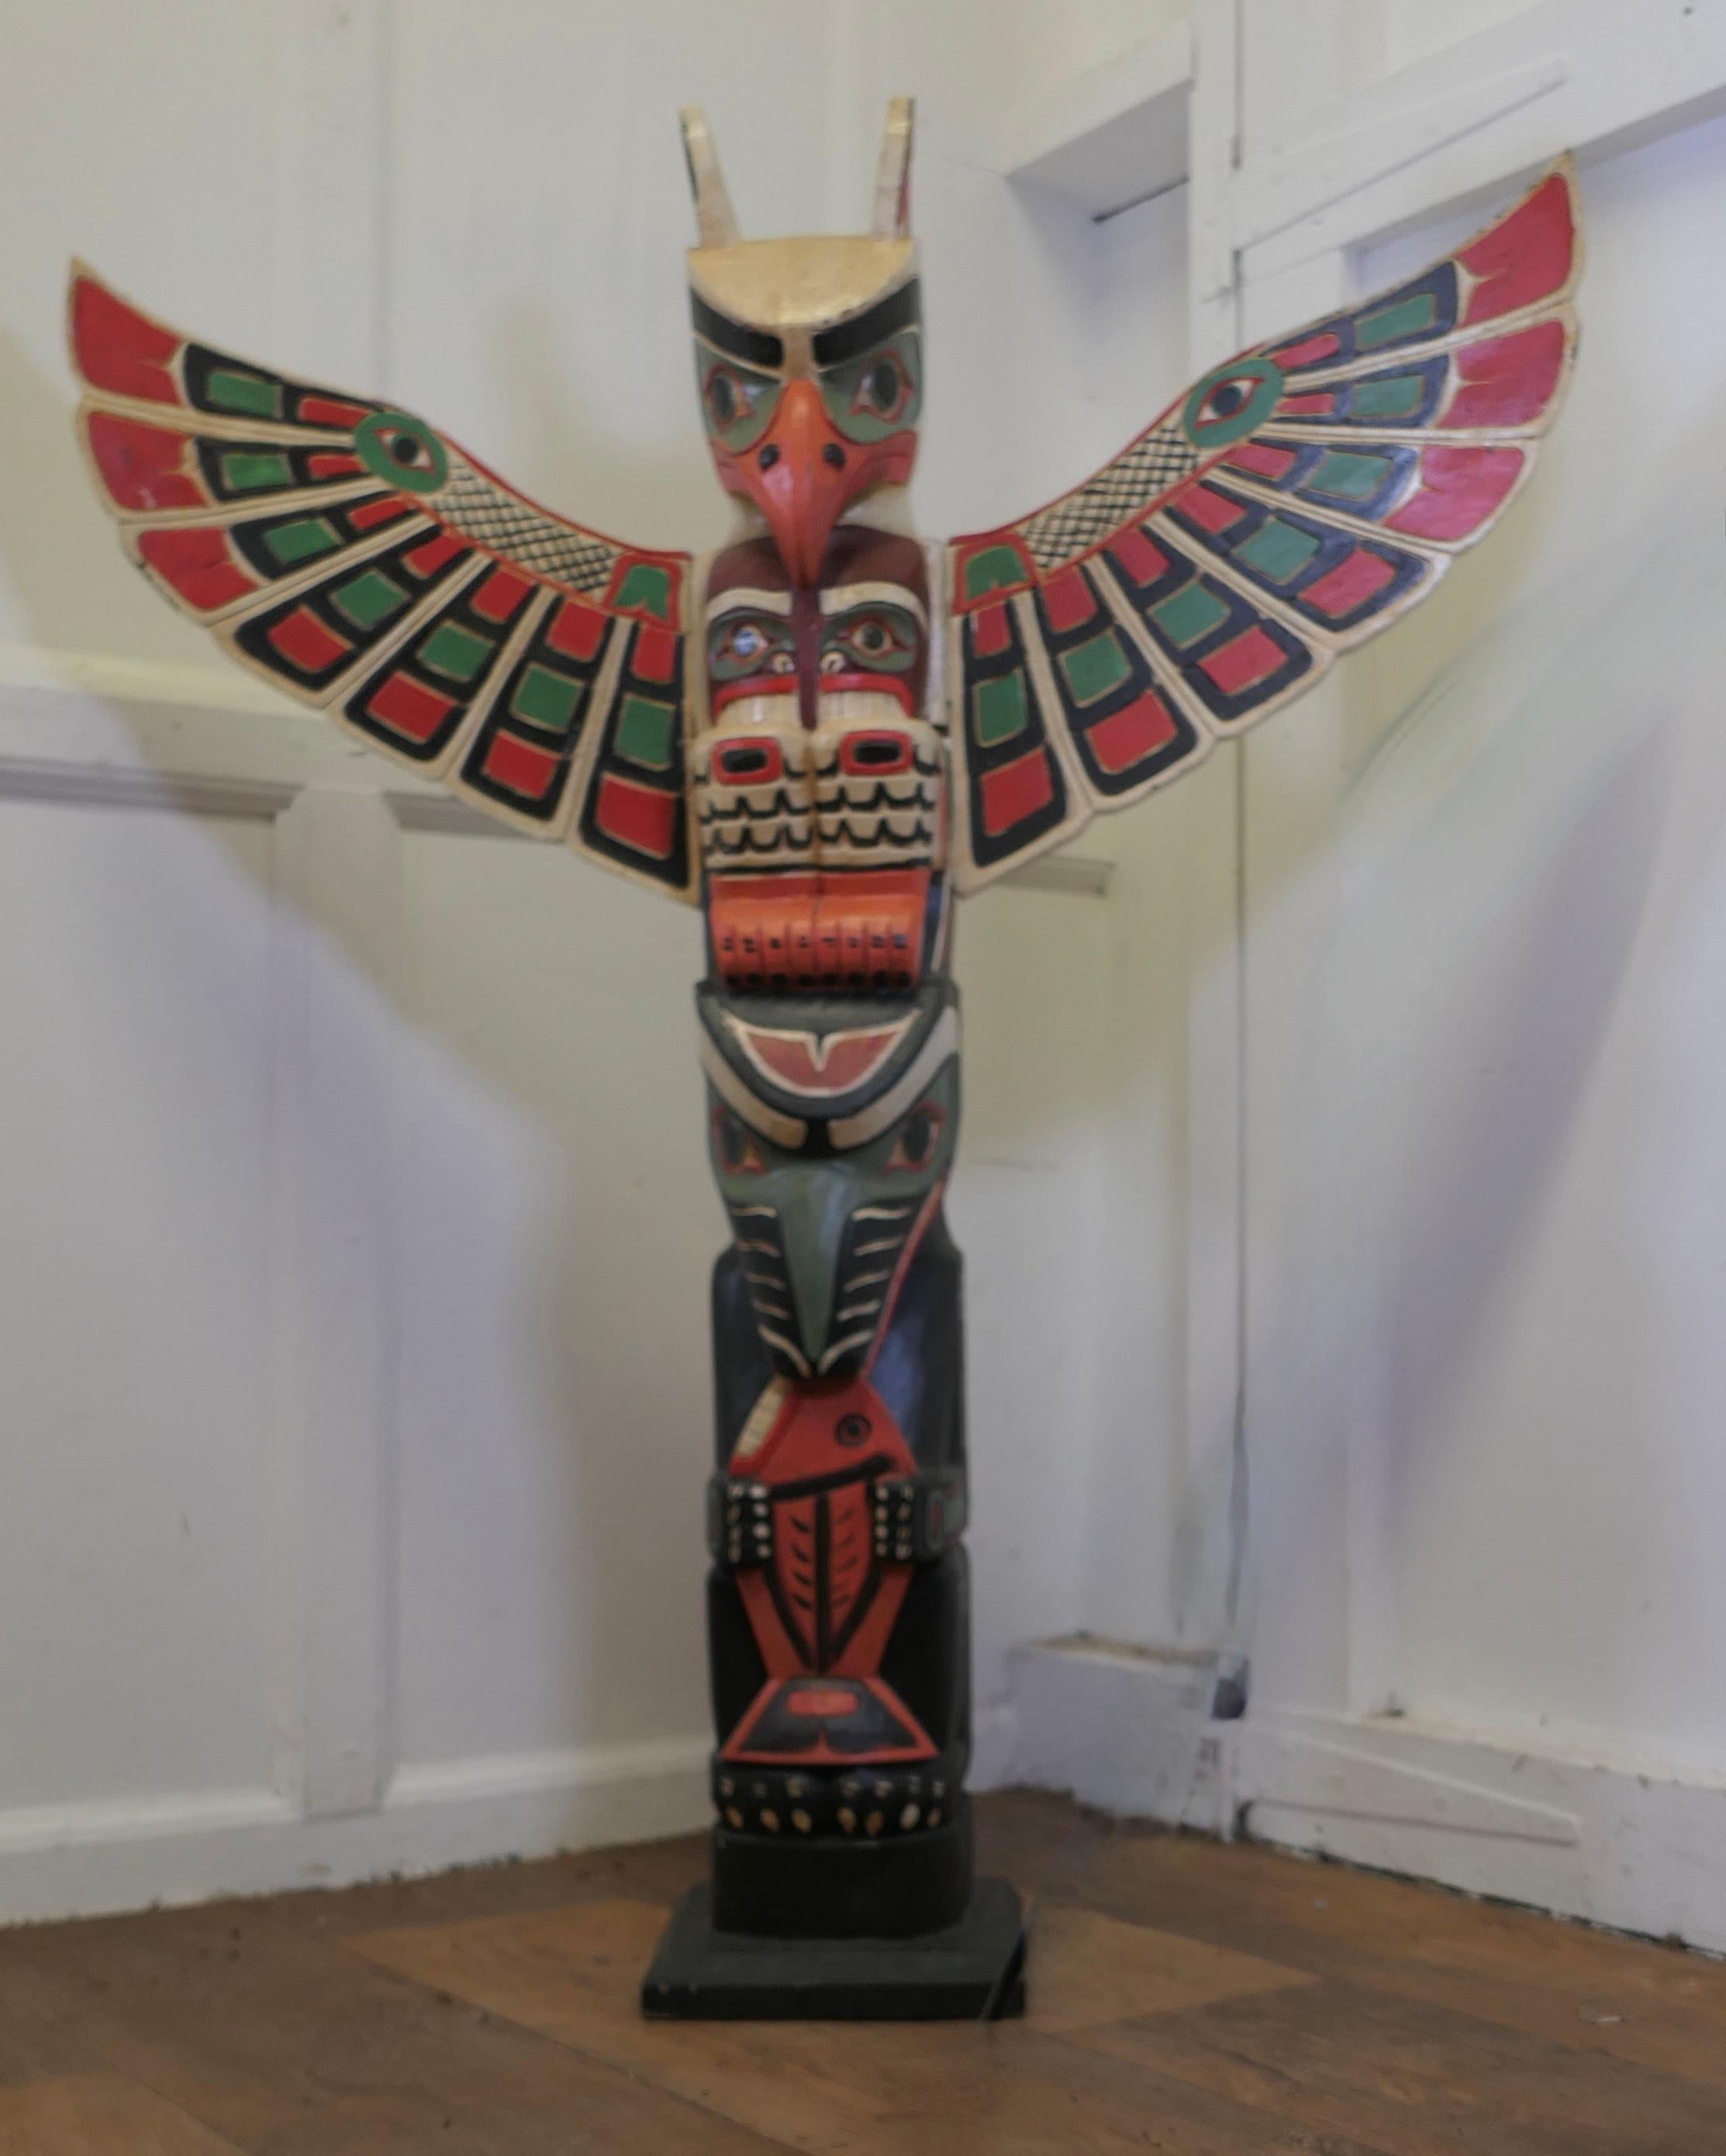 Totem peint amérindien du 20ème siècle

Un animal totem peint. 
Les animaux totems sont considérés comme ayant une signification spirituelle et veillent sur les tribus et les familles indiennes du nord-ouest du Pacifique. 

Ce totem présente un